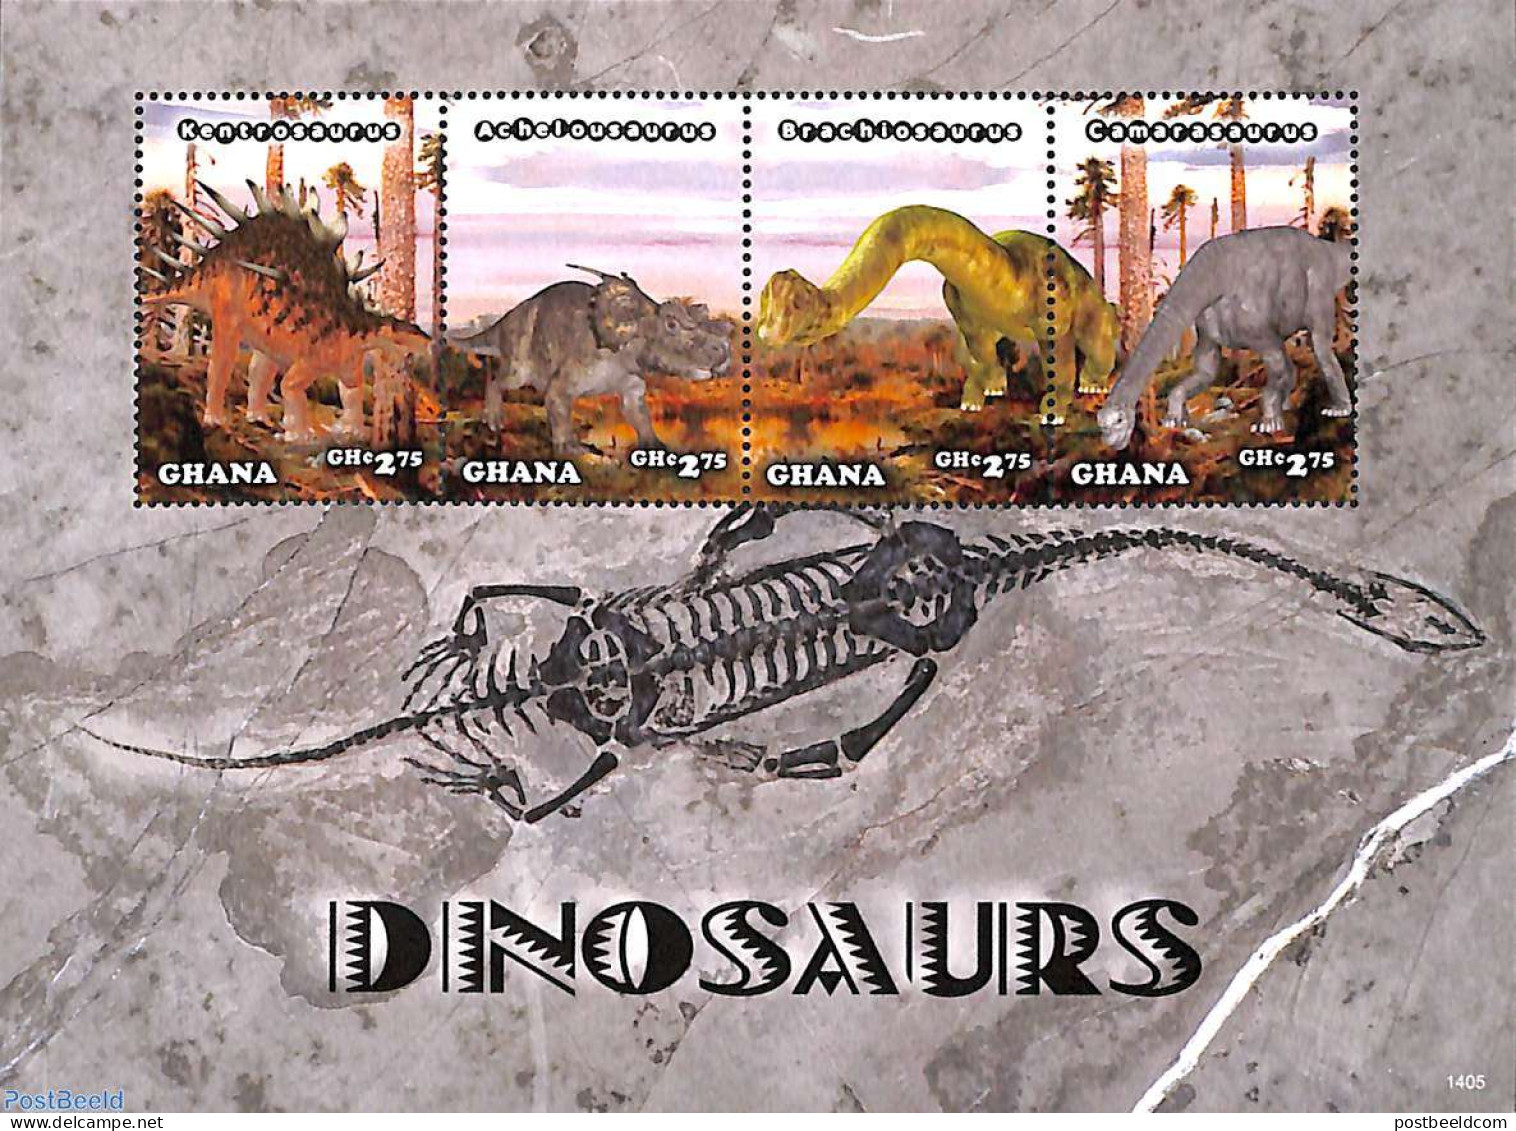 Ghana 2014 Dinosaurs 4v M/s, Mint NH, Nature - Prehistoric Animals - Prehistorisch